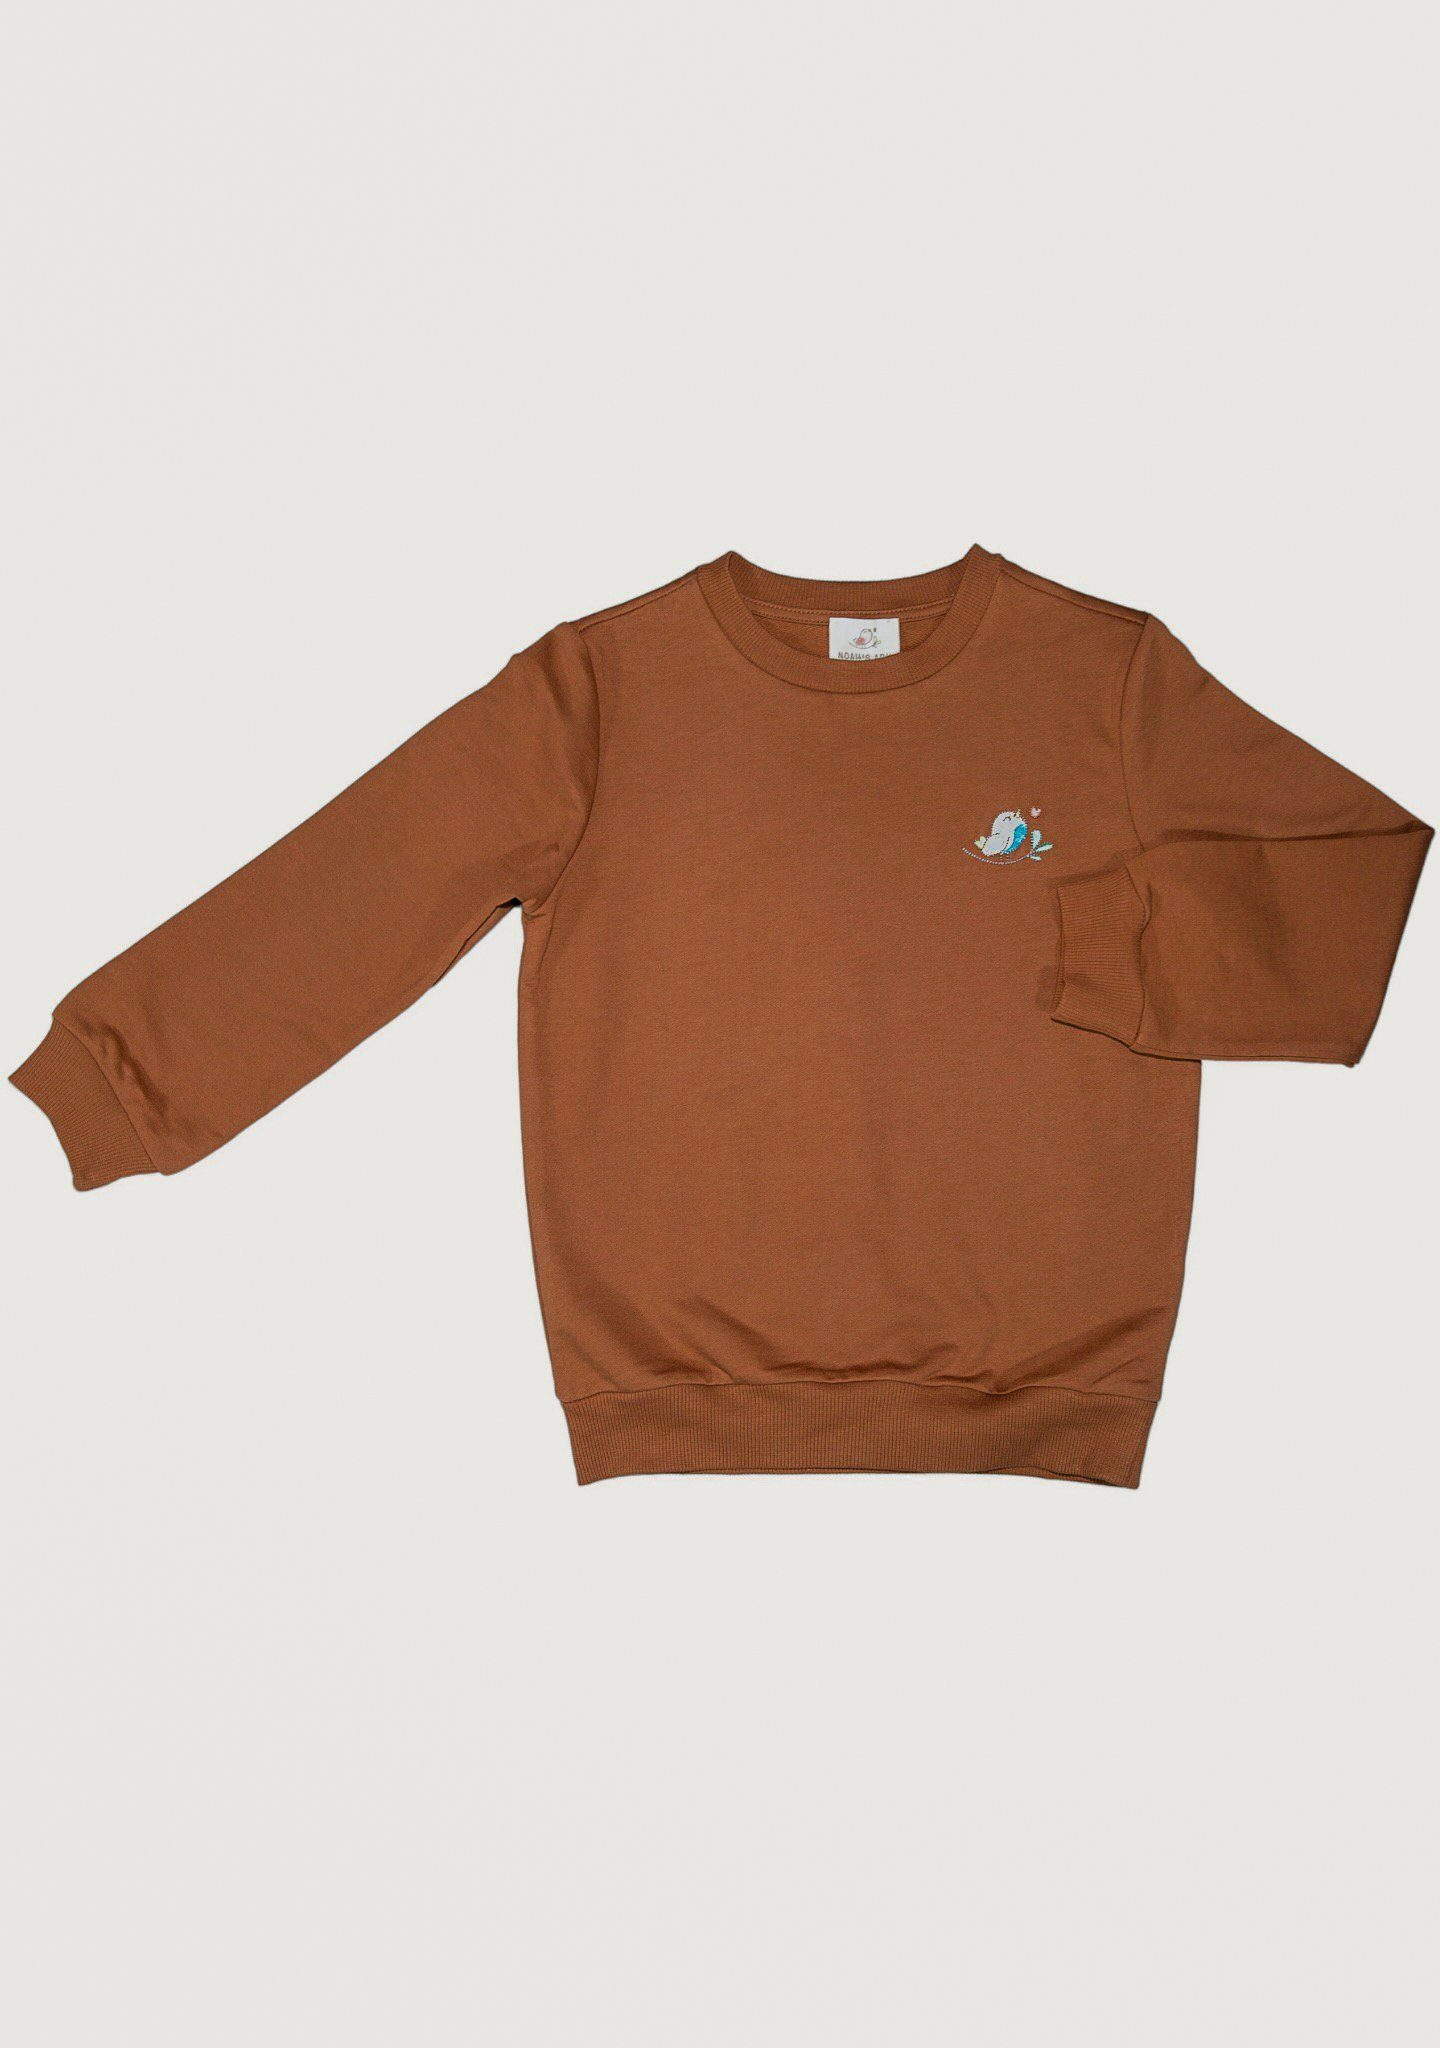 Noah's Ark Sweatshirt Pullover für Kinder aus Baumwolle in 100% kastanienbraun Unifarben Baumwolle